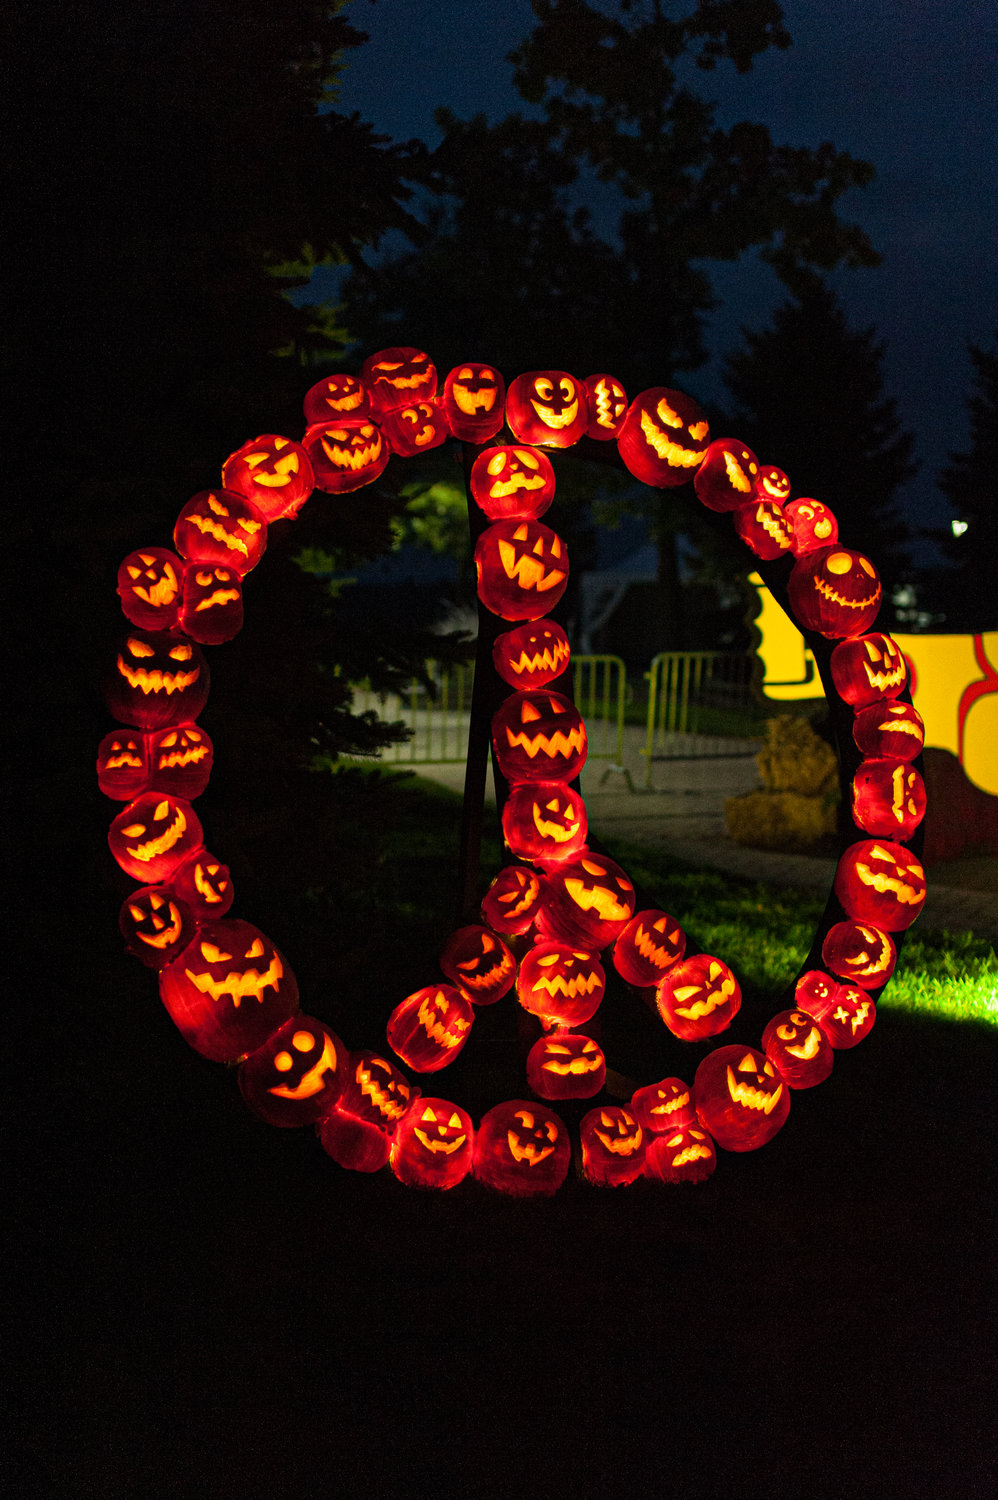 Glowing and groovy Woodstock pumpkin art on display.